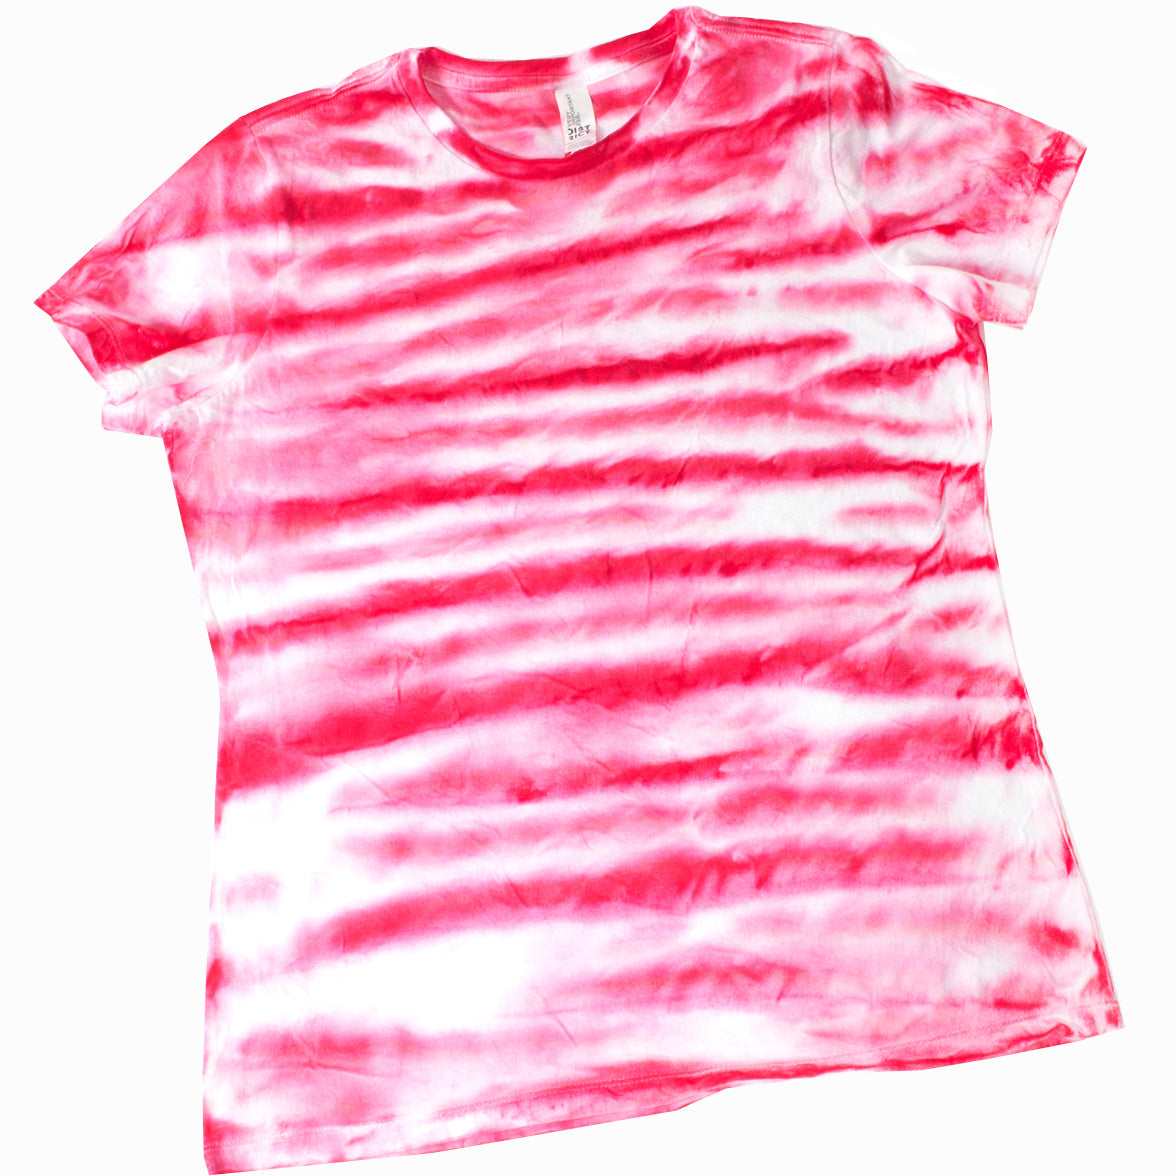 6-1331 Hot Pink Tie Dye - Quart – SEI Crafts